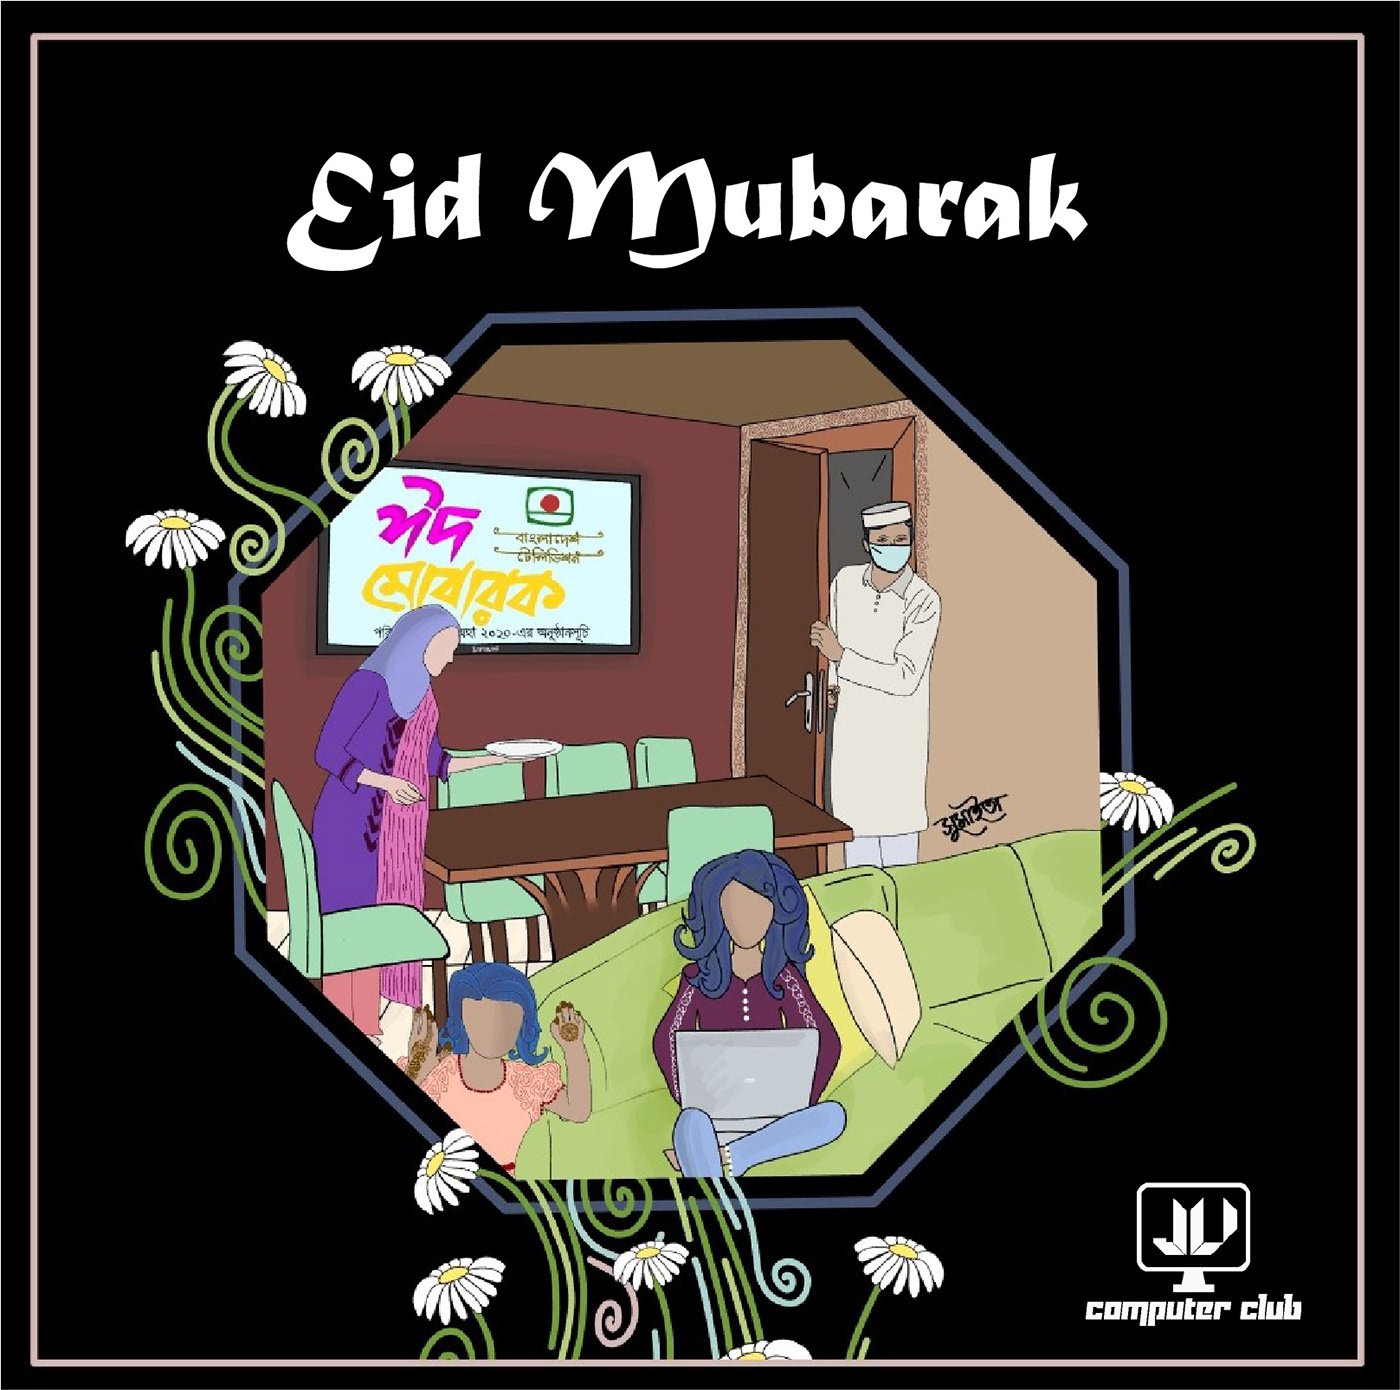 EidMubarak Btv Eid Mubarak ramadan Advertising 